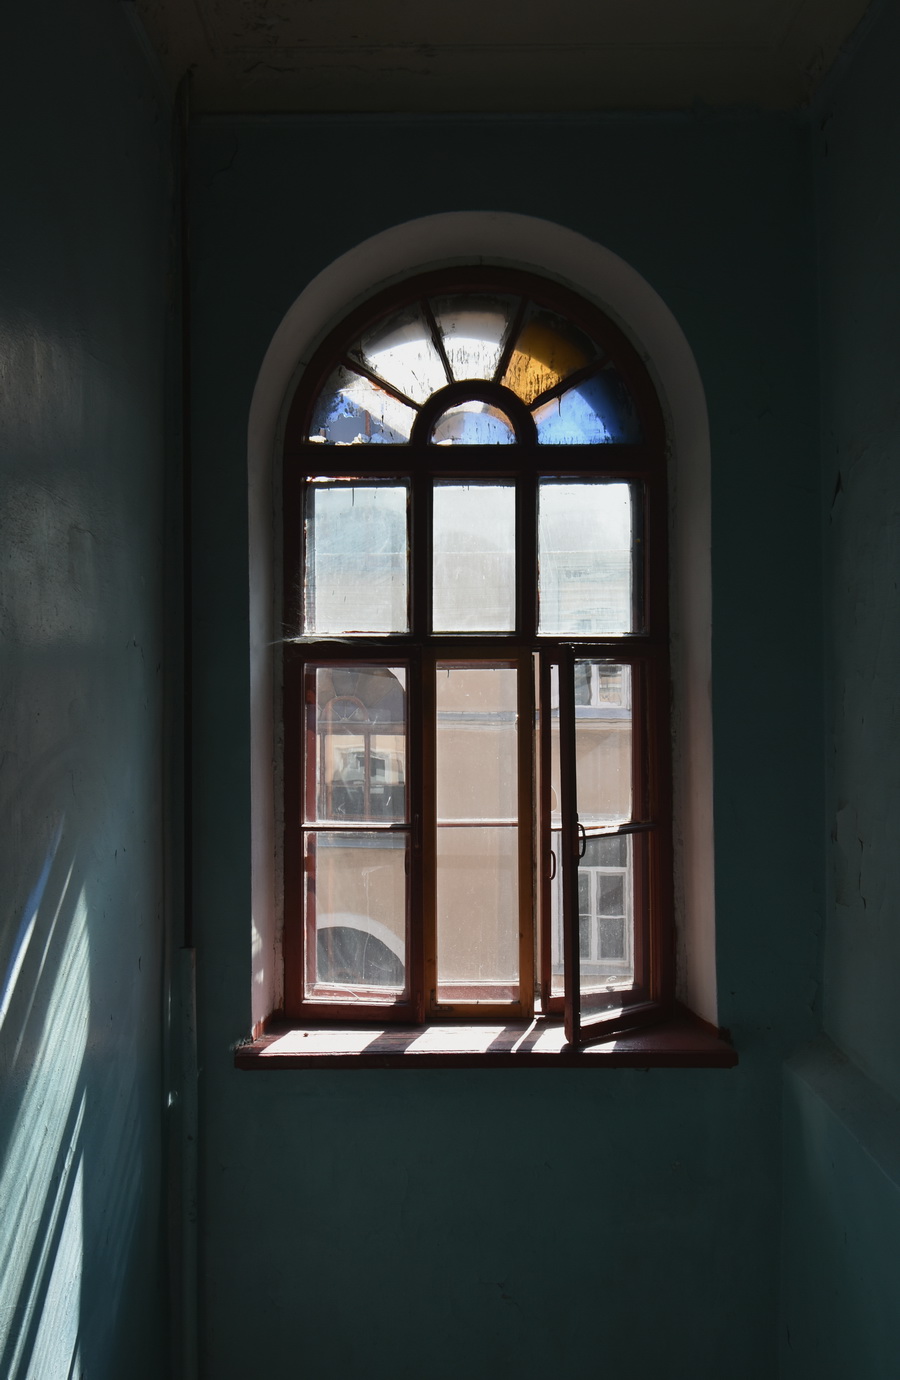 Окно на лестнице дома по адресу Большой пр. ПС, д. 4, Петербург. Фото С. В. Васильева, 2020